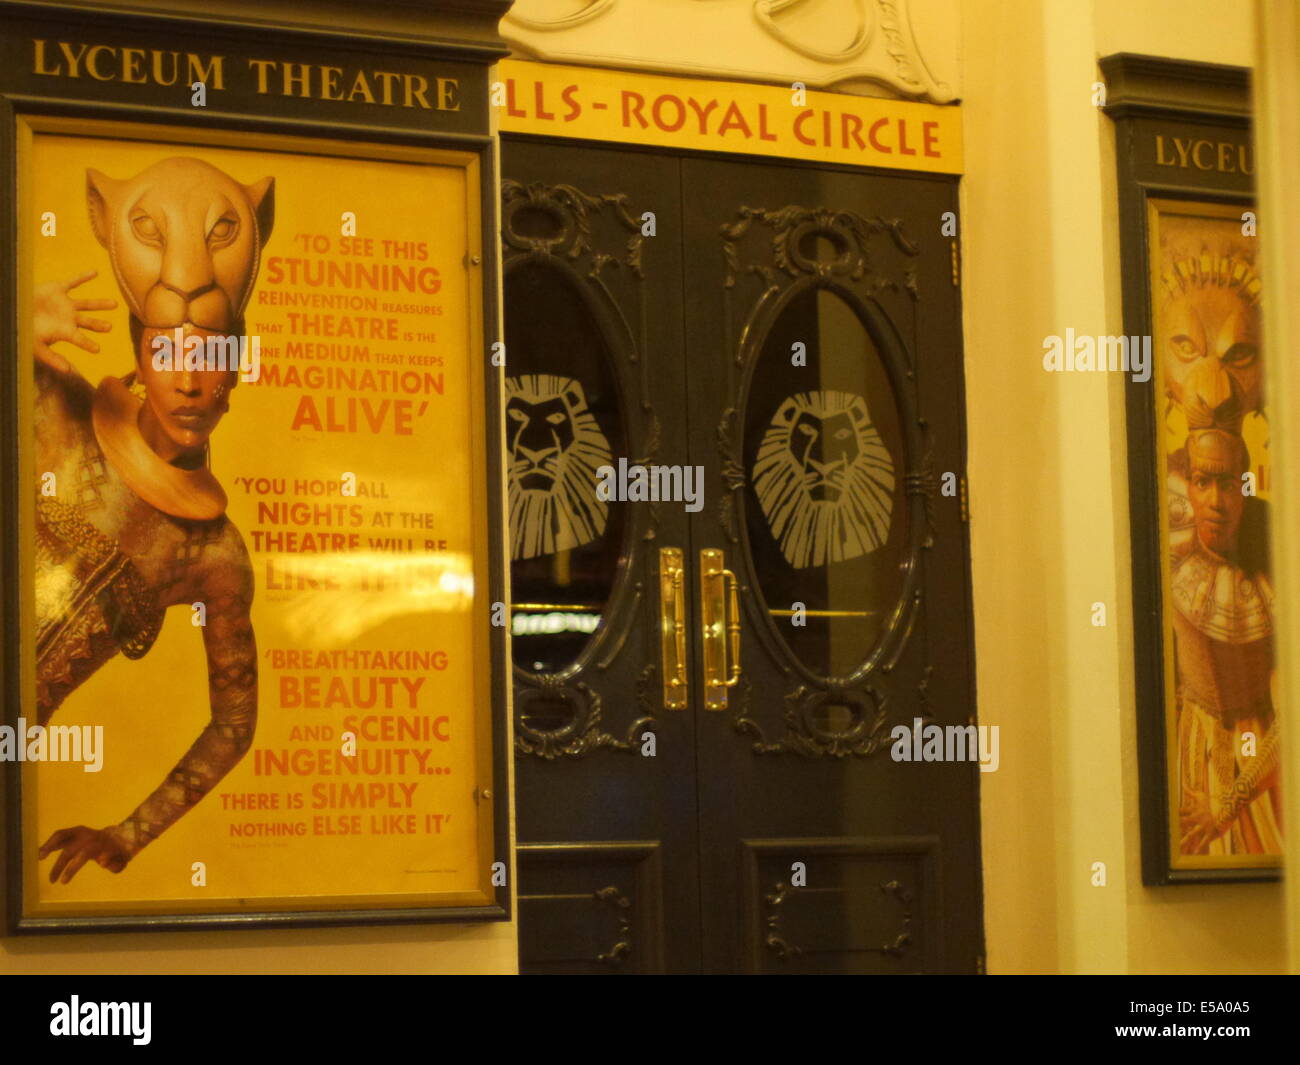 Lyceum Theatre de nuit montrant le Lion King au London Theatre Land , Disney adaptation Étape. Lyceum photographié à la nuit. Banque D'Images